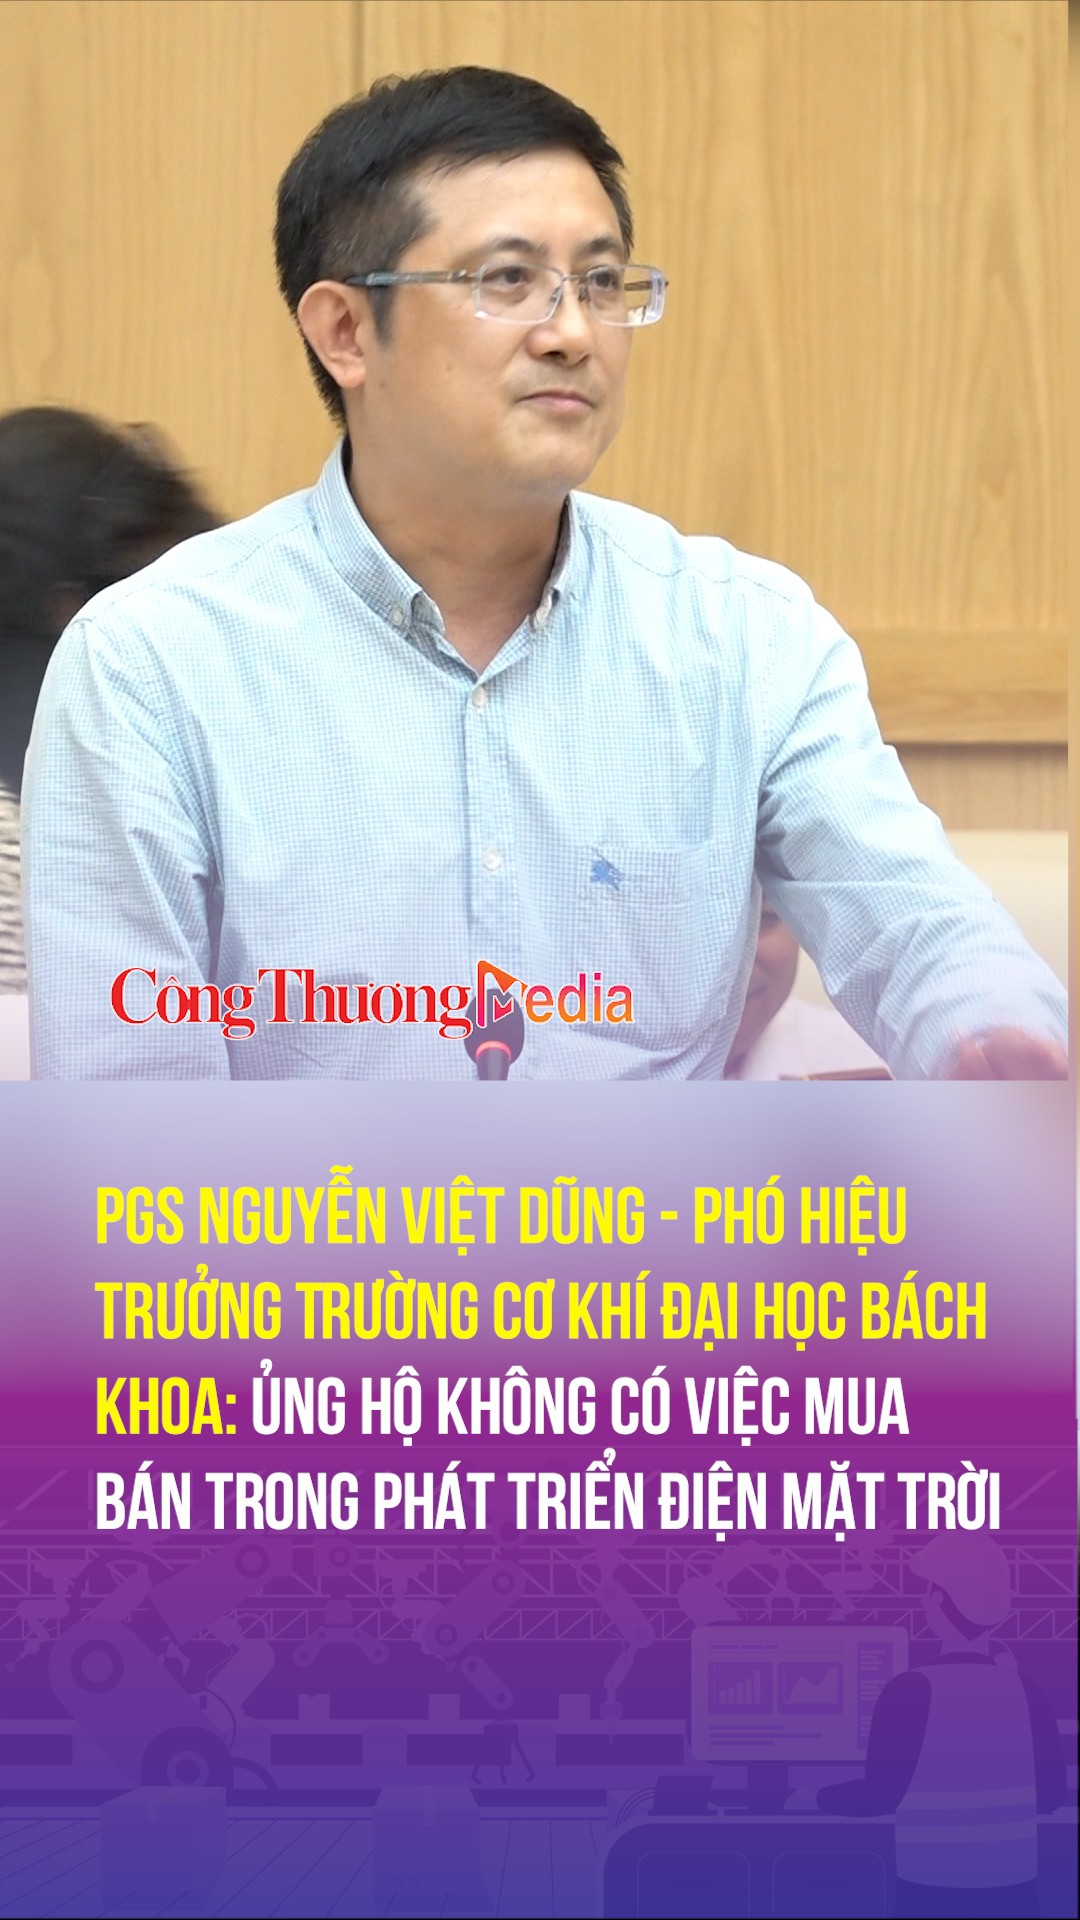 PGS Nguyễn Việt Dũng: Ủng hộ không có việc mua bán trong phát triển điện mặt trời mái nhà